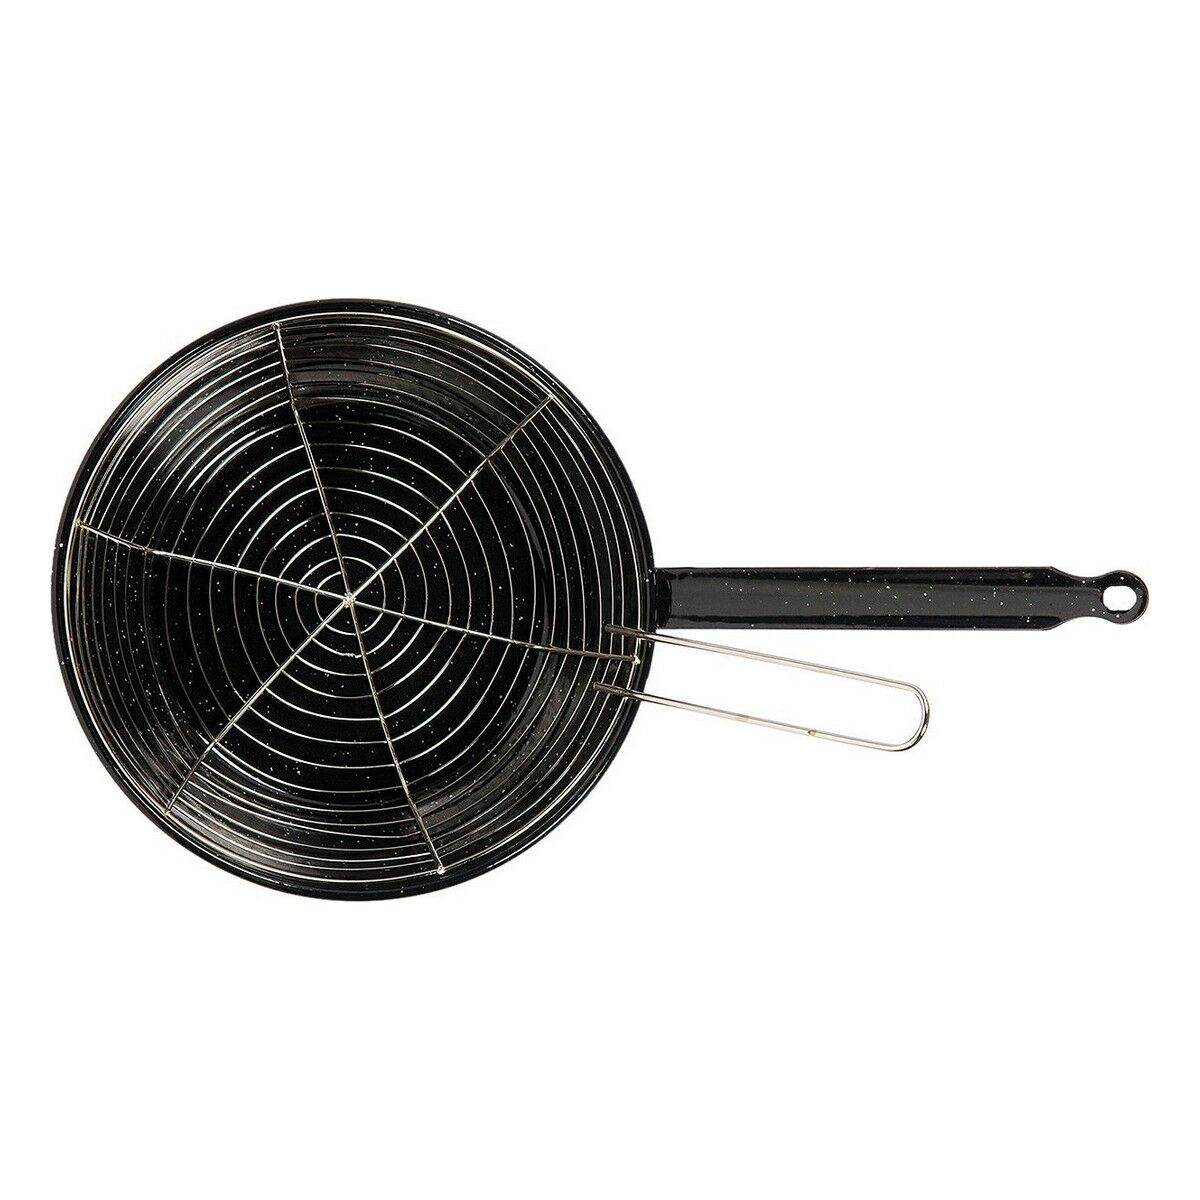 Frying pan with basket Vaello Black Enamelled Steel (Ø 26 cm)